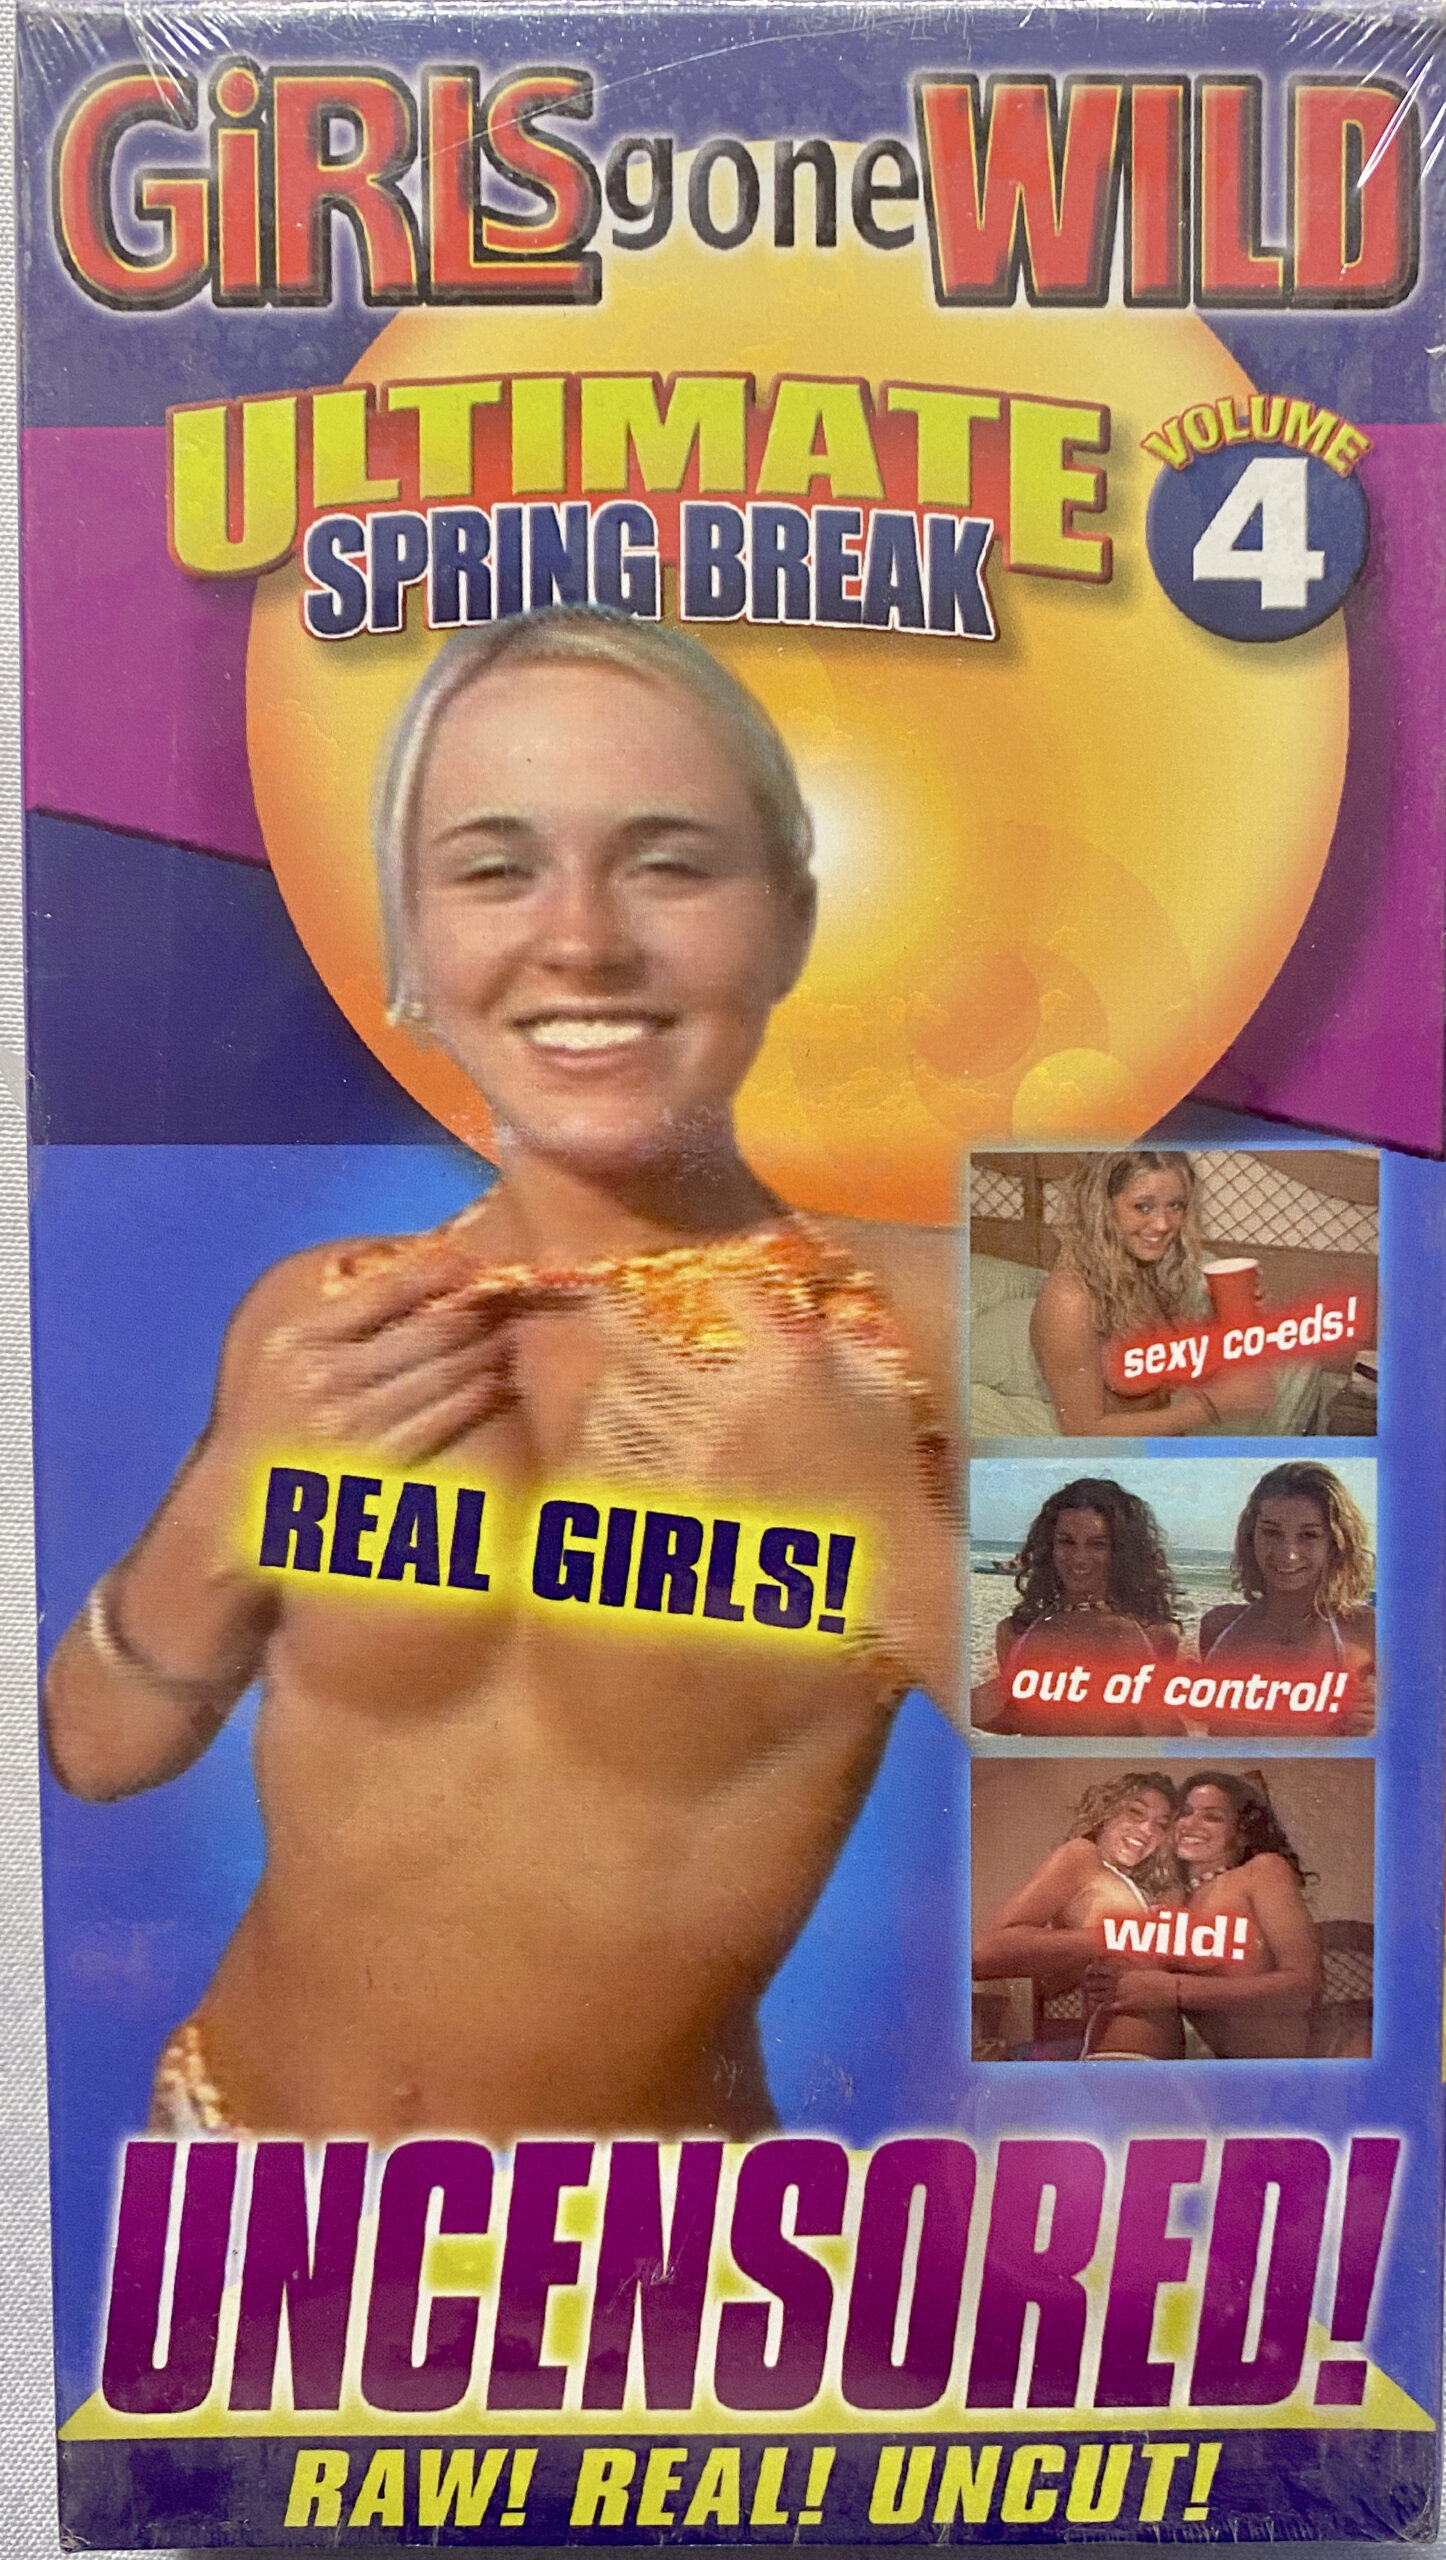 brett carn recommends Girls Gone Wild Ultimate Spring Break